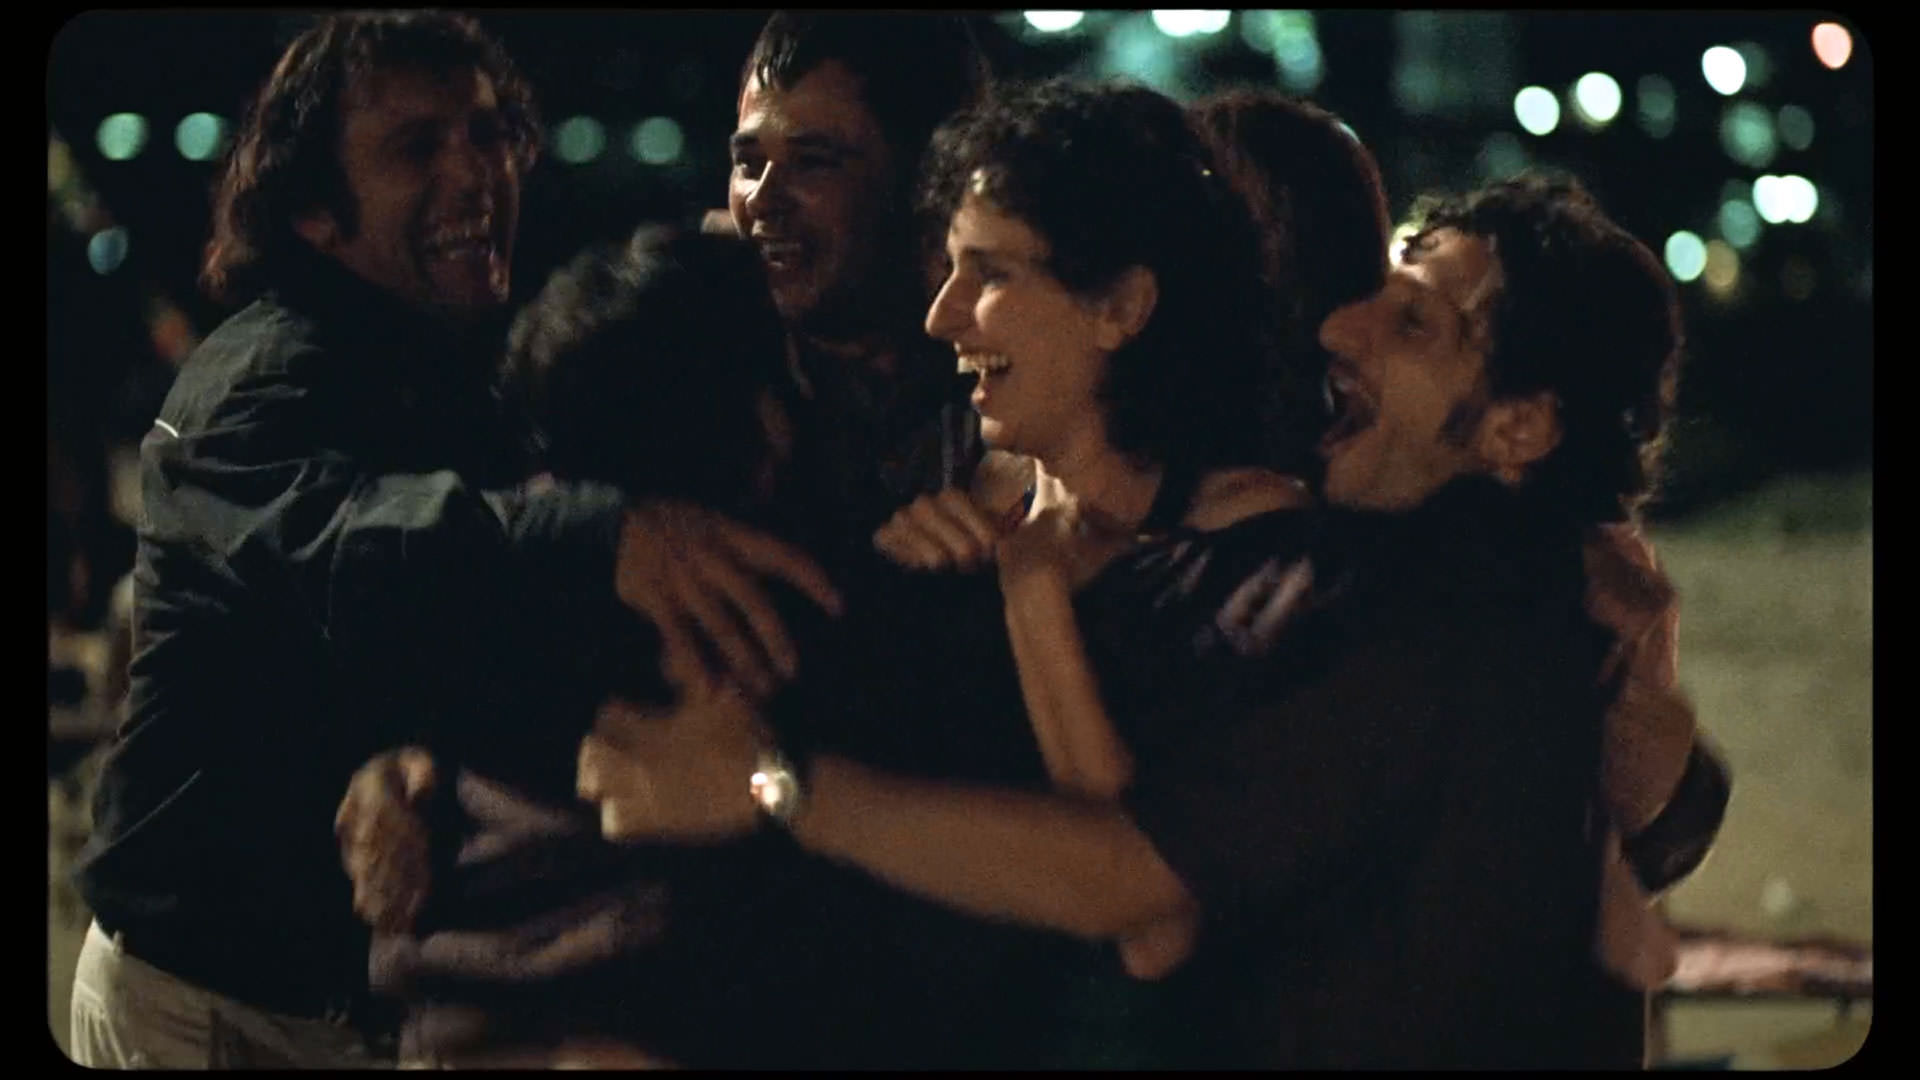 کارول دوارته توسط چند مرد که با او خوشحالی میکنند احاطه شده است در نمایی از فیلم کیمرا به کارگردانی آلیچه رورواکر